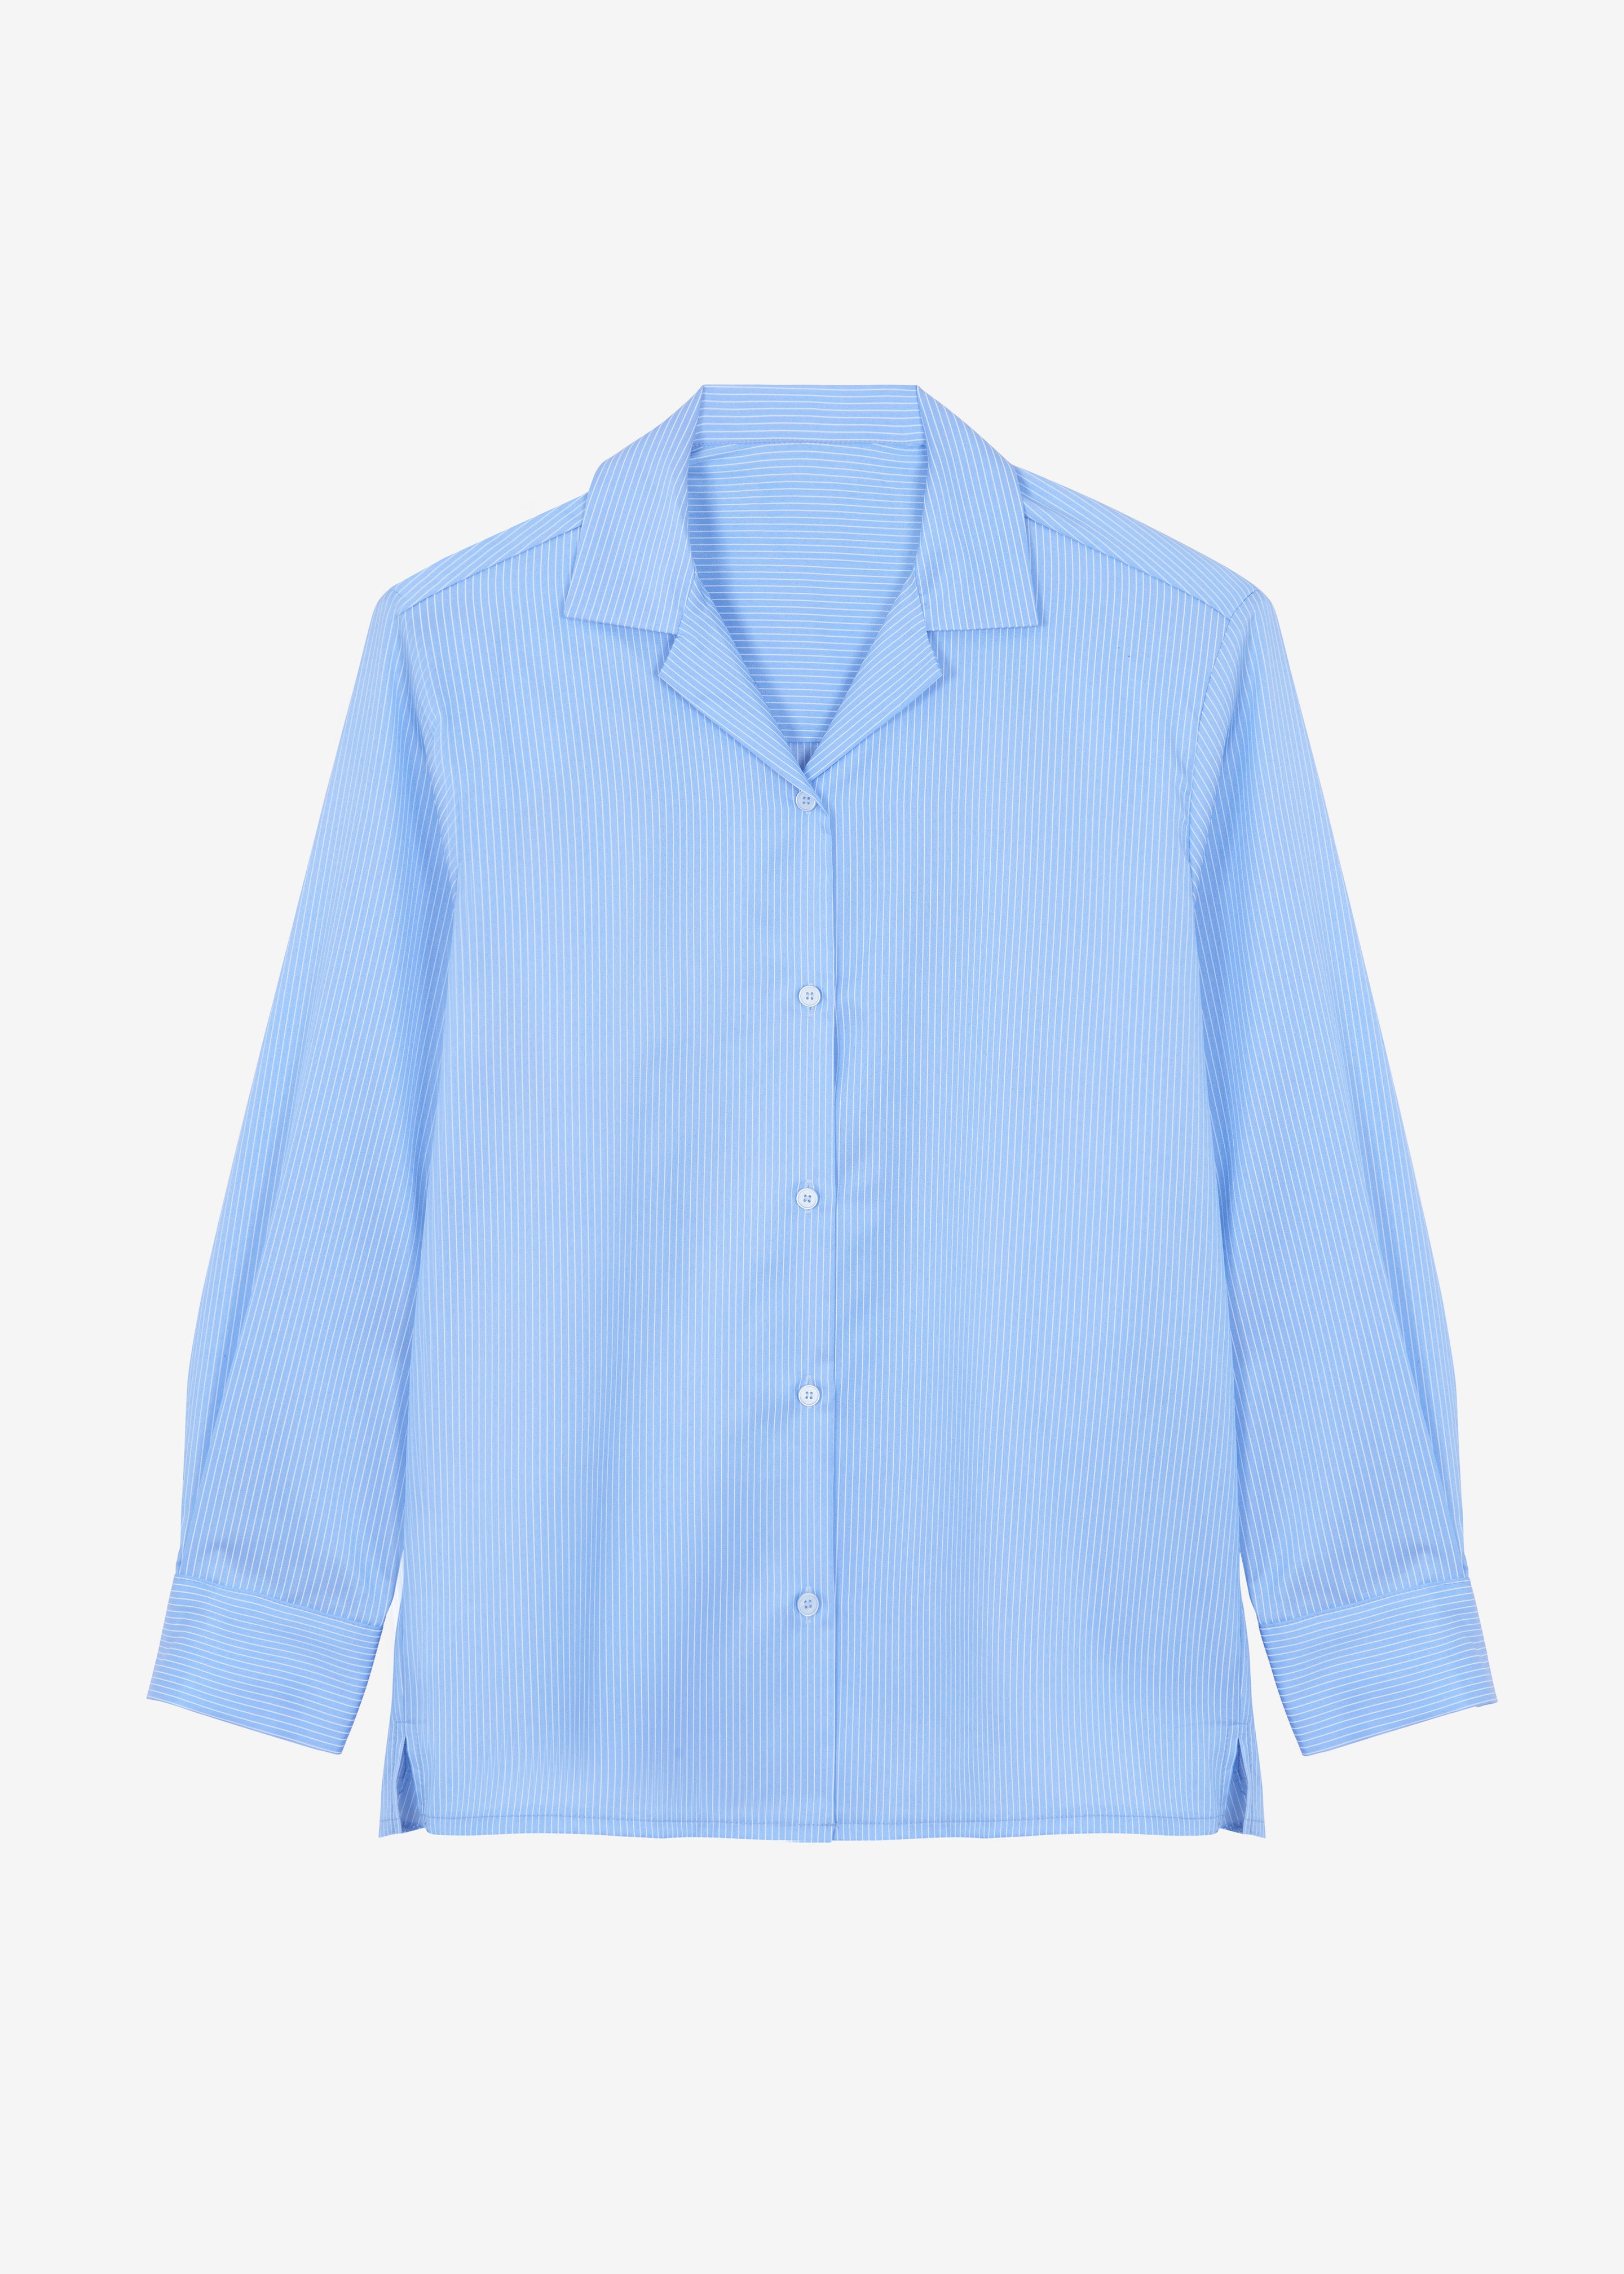 Noah Padded Button Up Shirt - Blue Pinstripe - 11